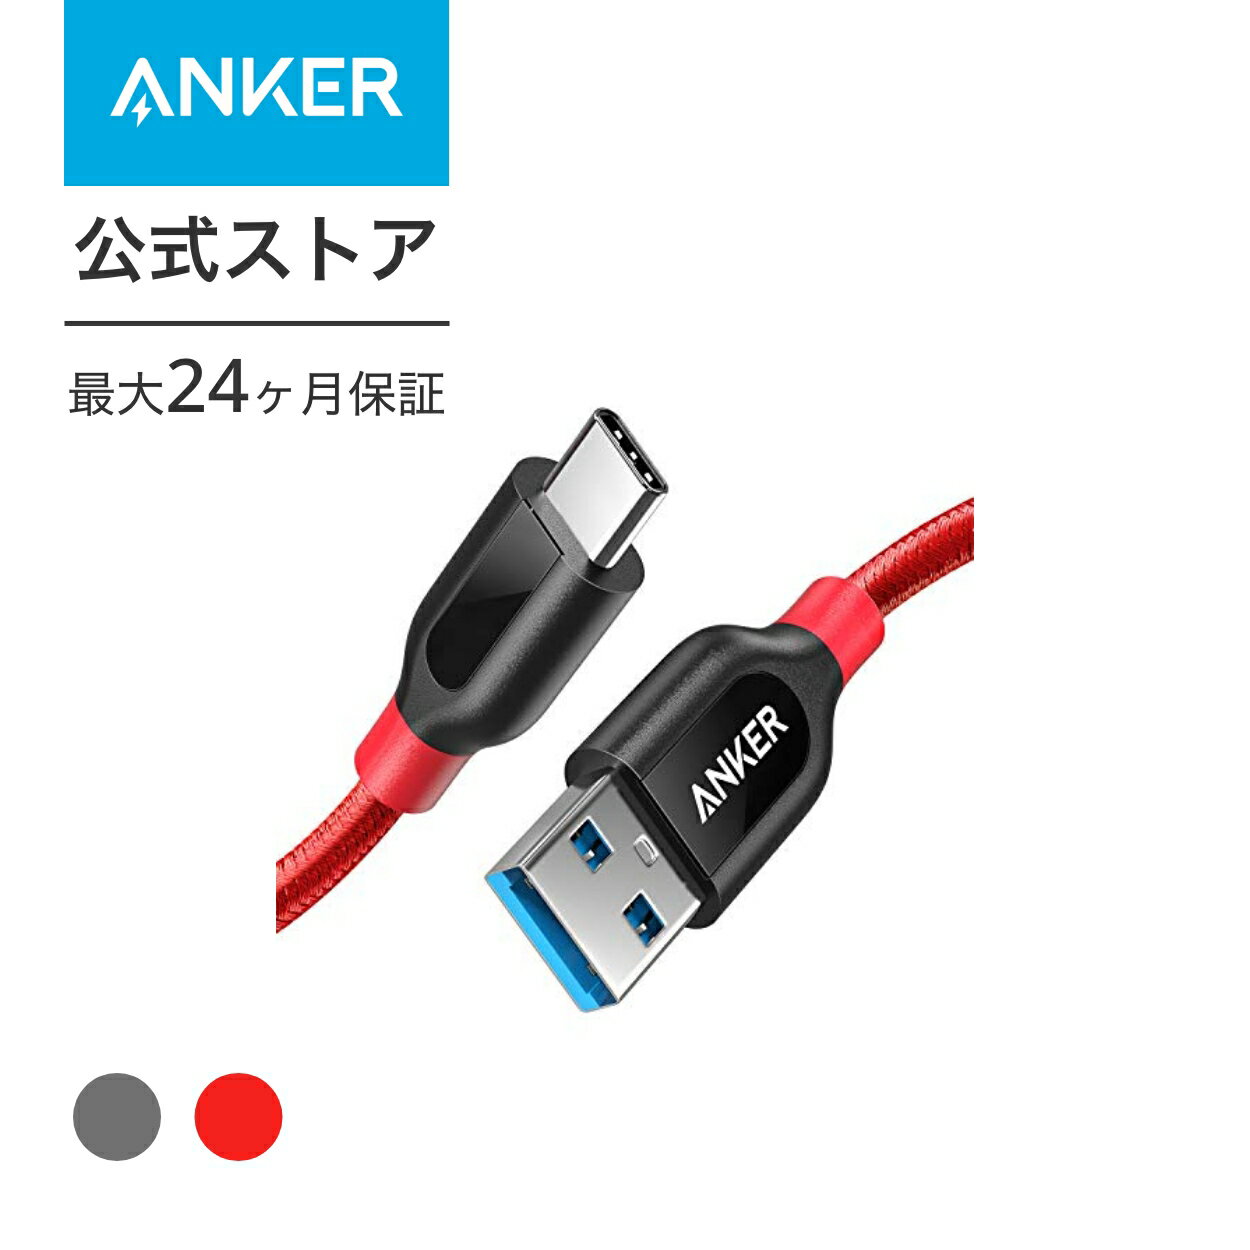 【140円OFF 5/16まで】Anker PowerLine+ USB-C